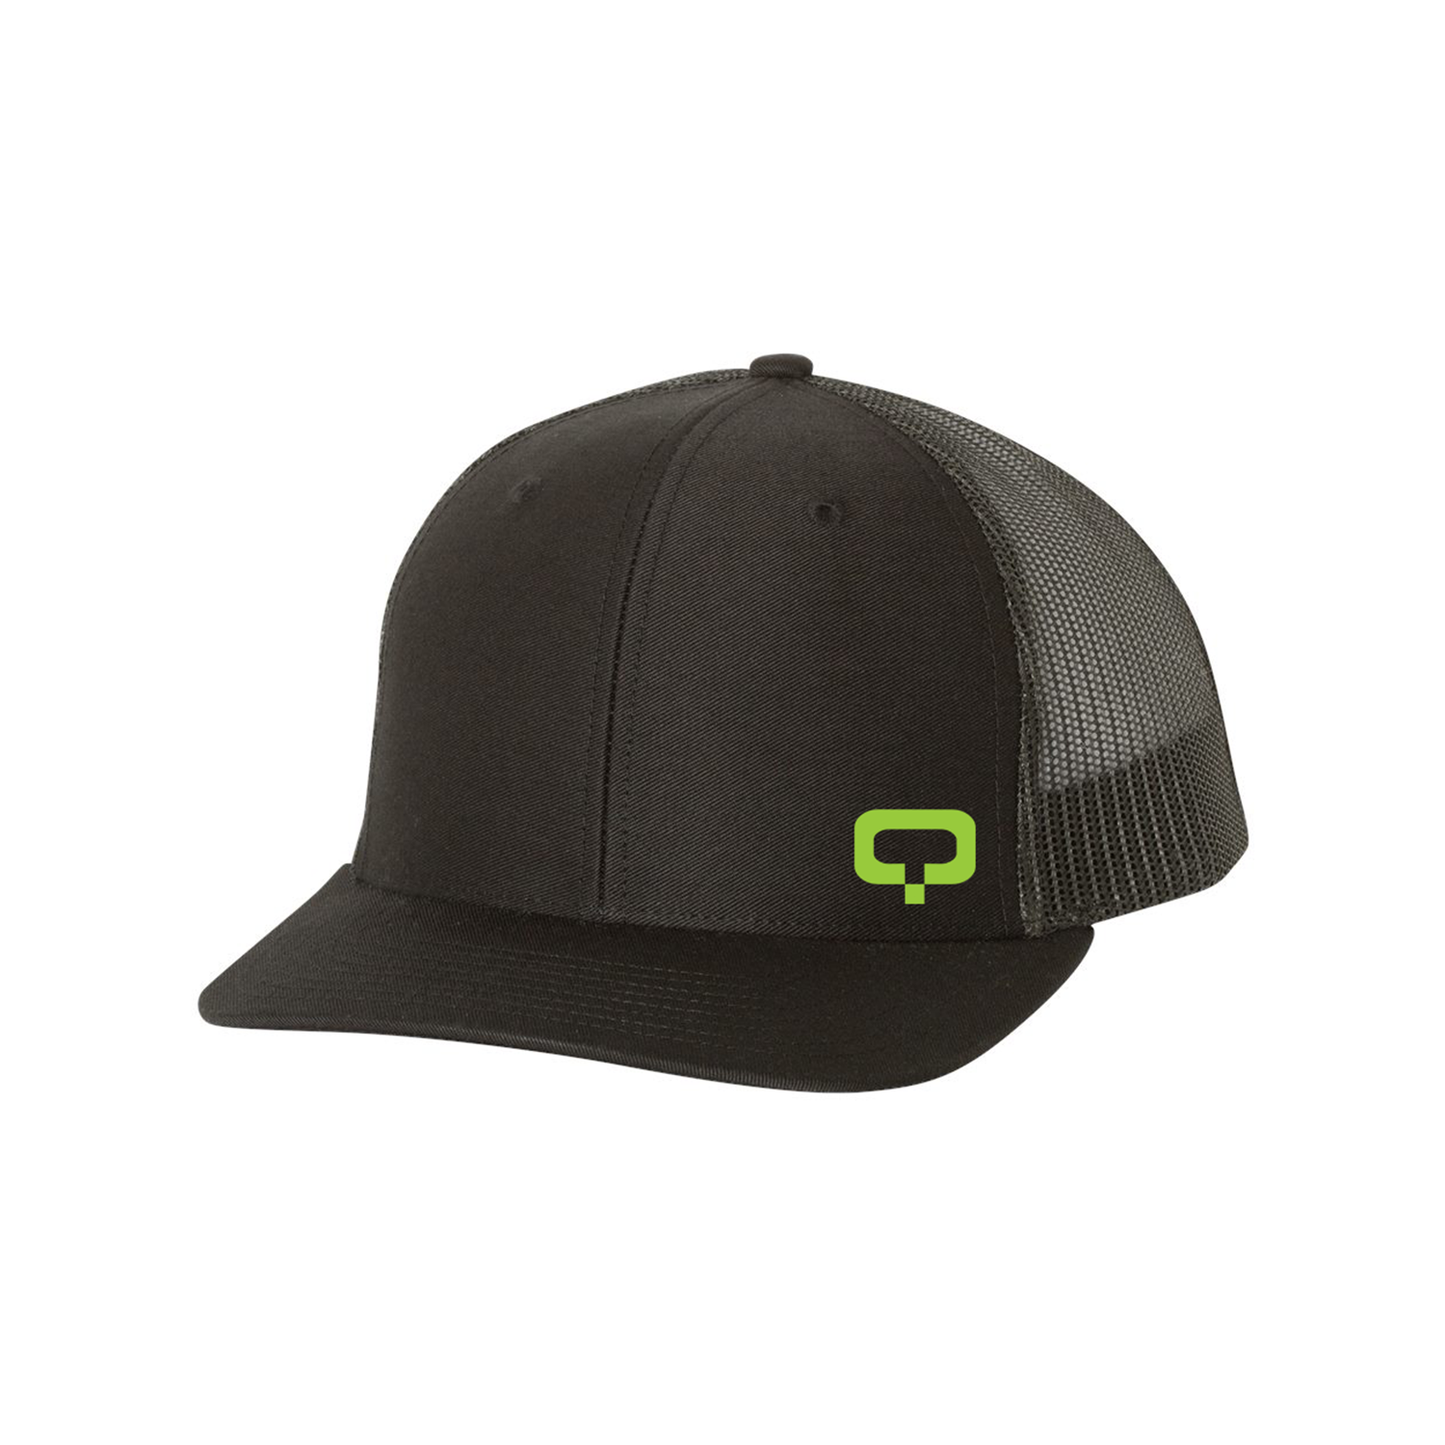 Q Snapback Trucker Hat